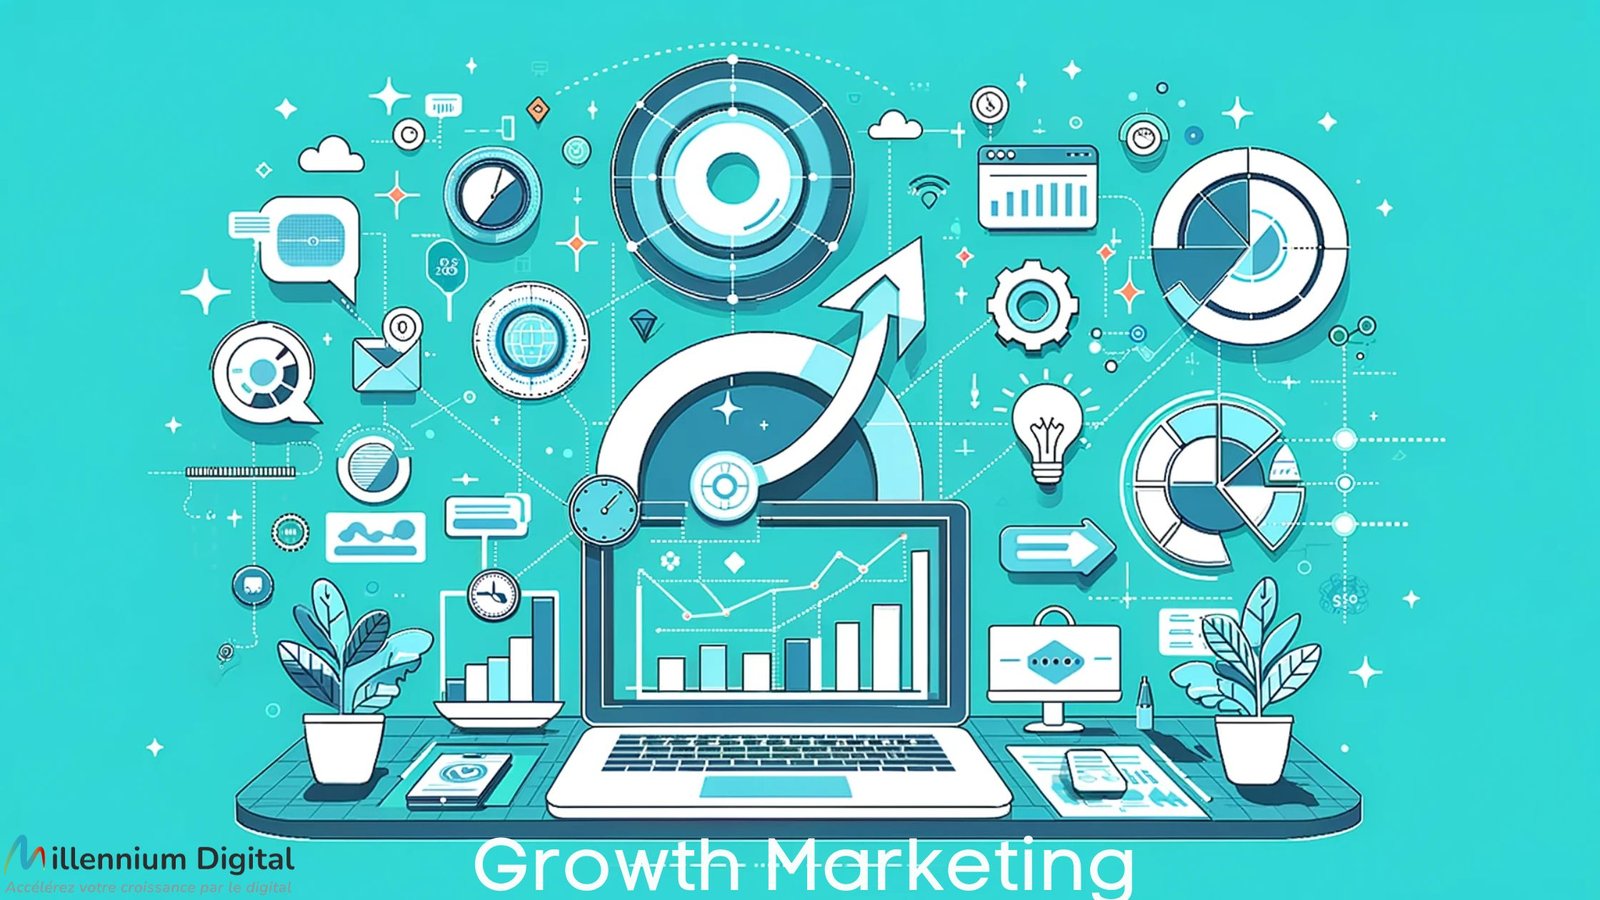 infographie illustrant le concept de 'Growth Marketing' dans un environnement digital